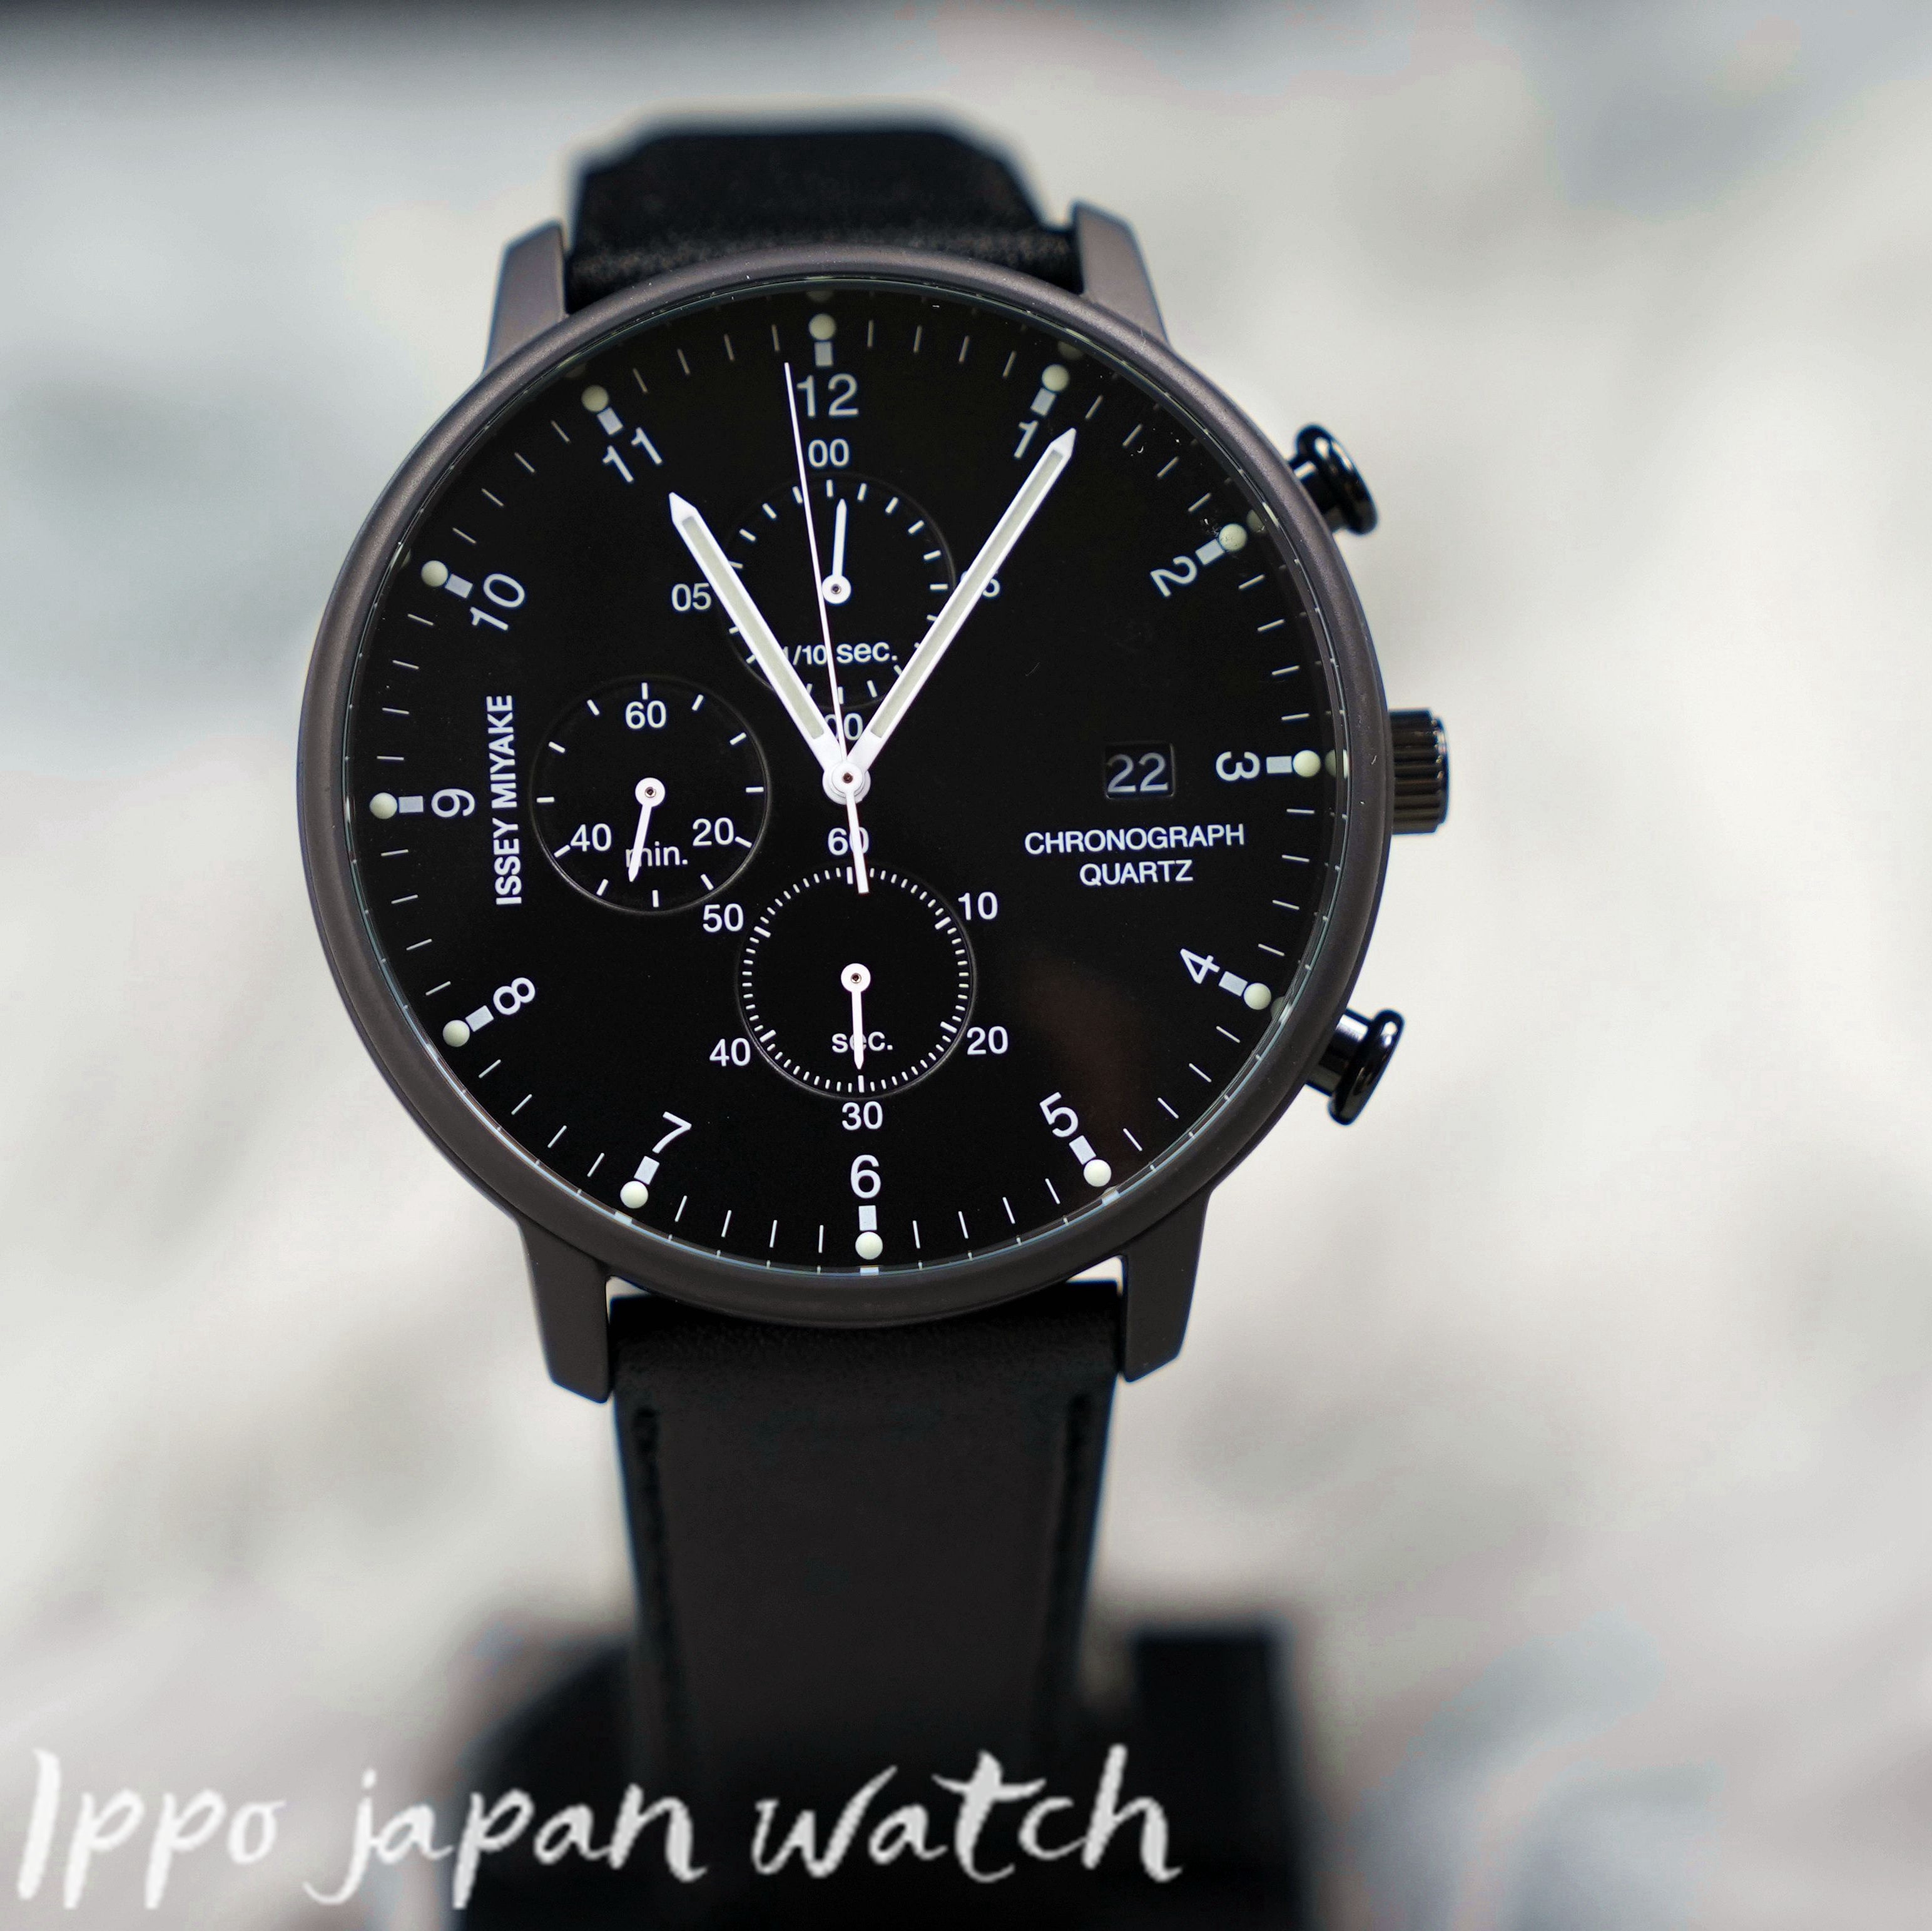 ISSEY MIYAKE C NYAD007 men's watch manufactured by Seiko